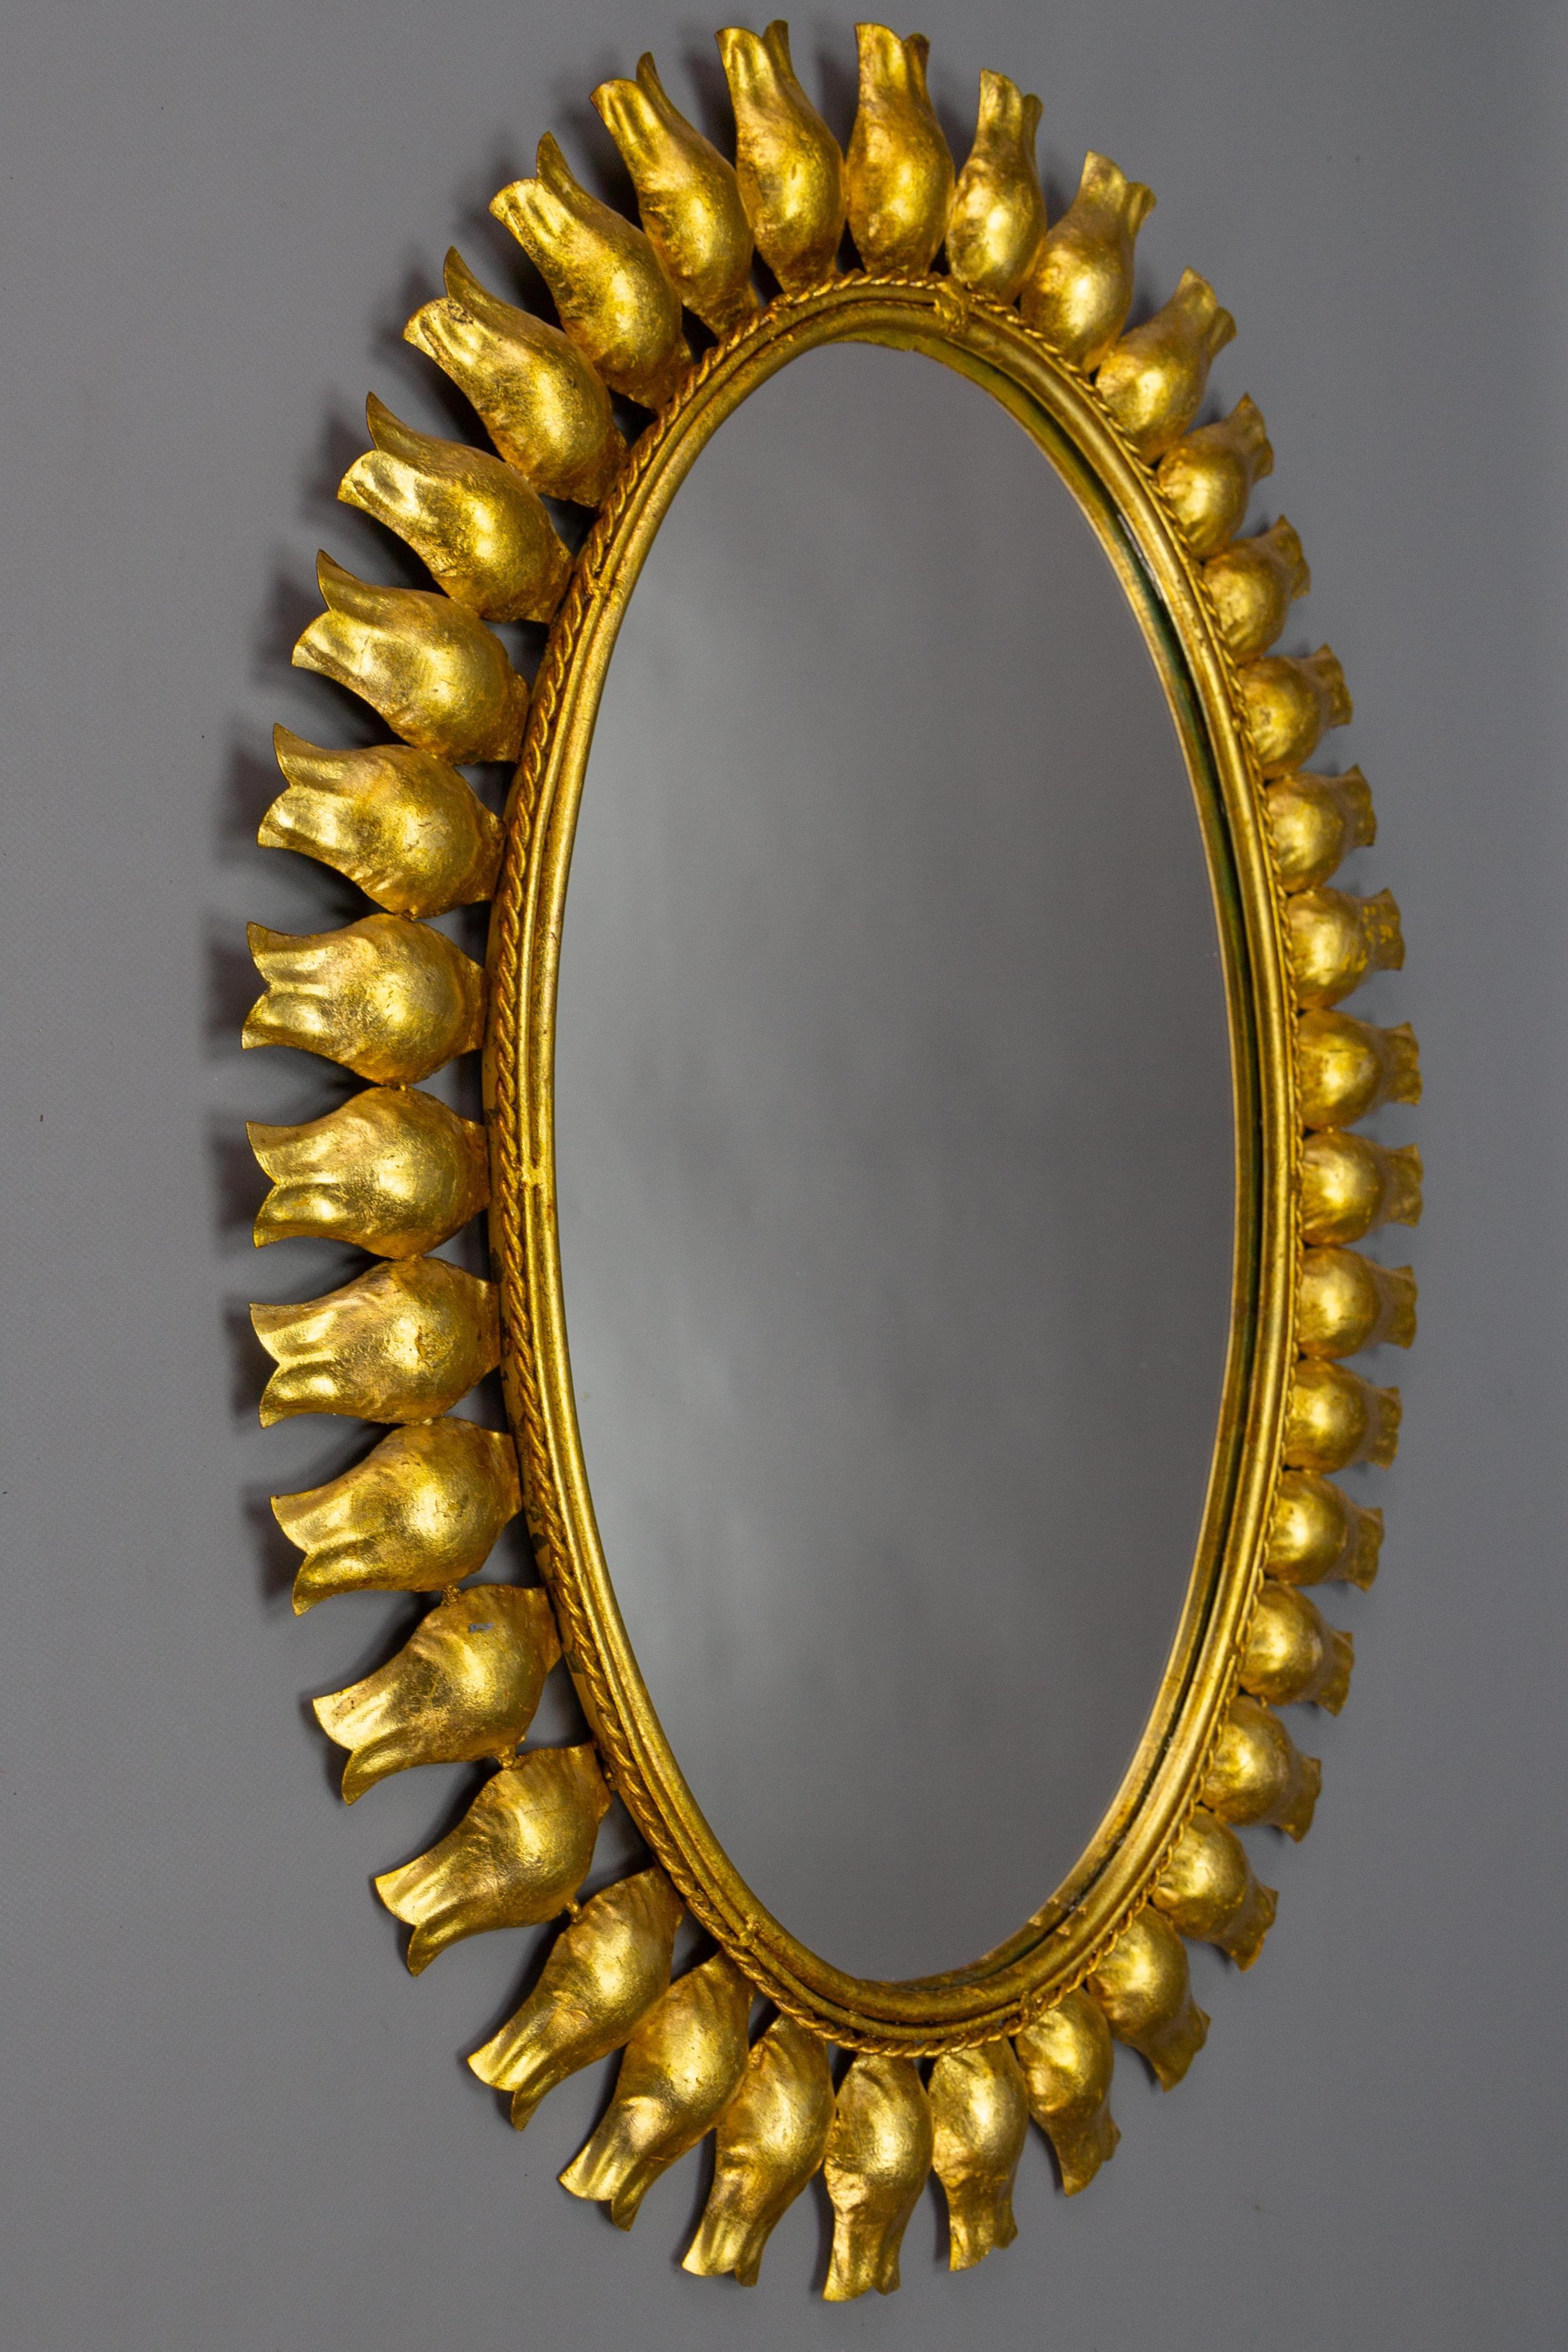 Miroir en forme de soleil en métal doré du milieu du siècle, Allemagne, vers les années 1950.
Magnifique miroir ovale de style Hollywood Regency, en forme de soleil ou de soleil éclatant, avec un cadre en métal doré à motifs de pétales.
Dimensions :